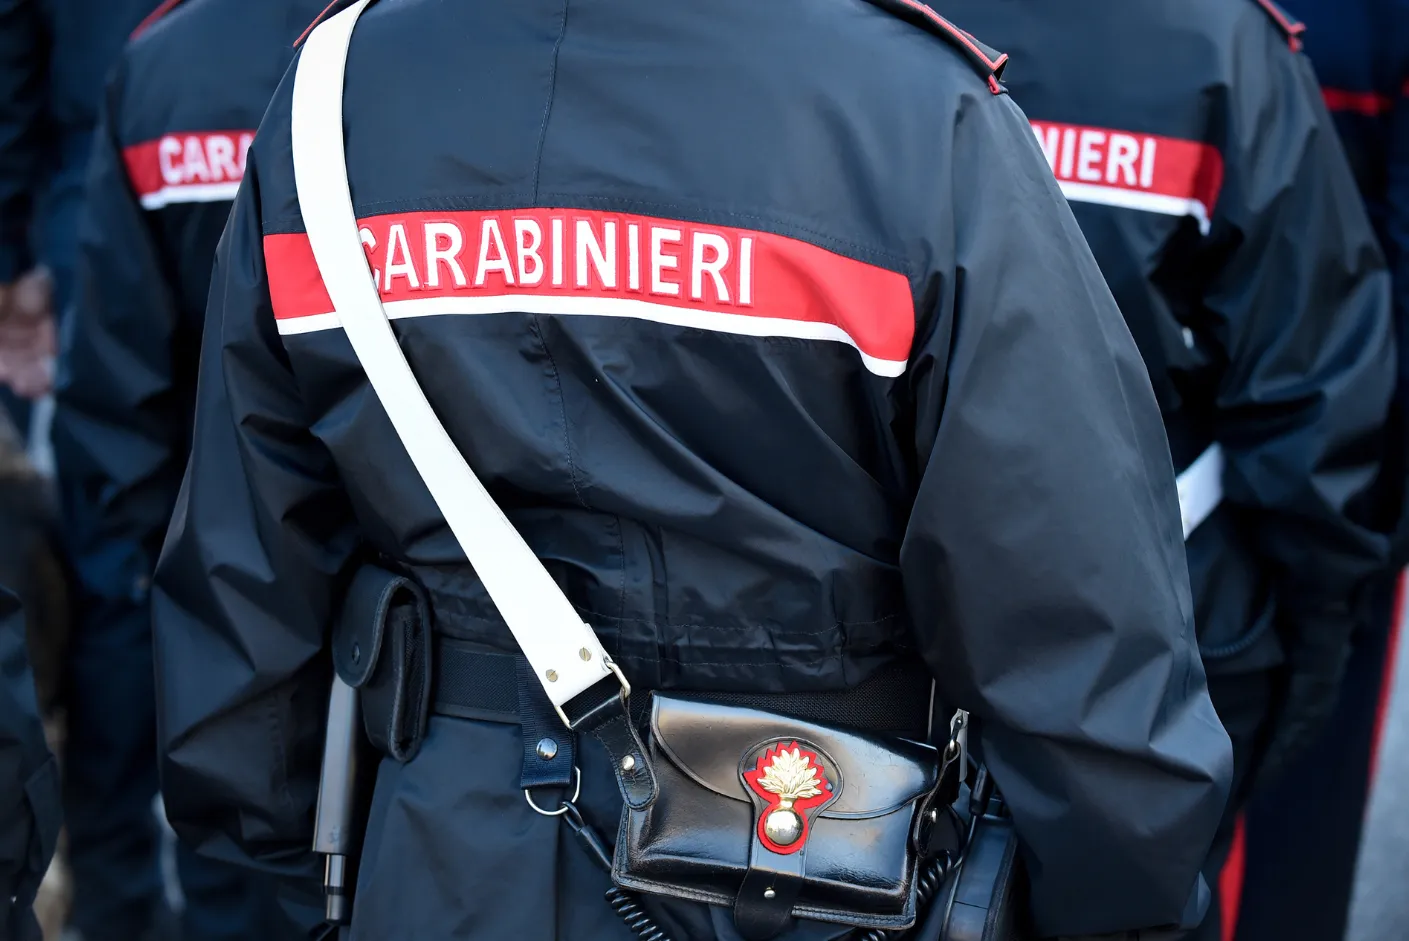 Concorso carabinieri e simulatore concorso carabinieri tutte le informazioni utili per la prova